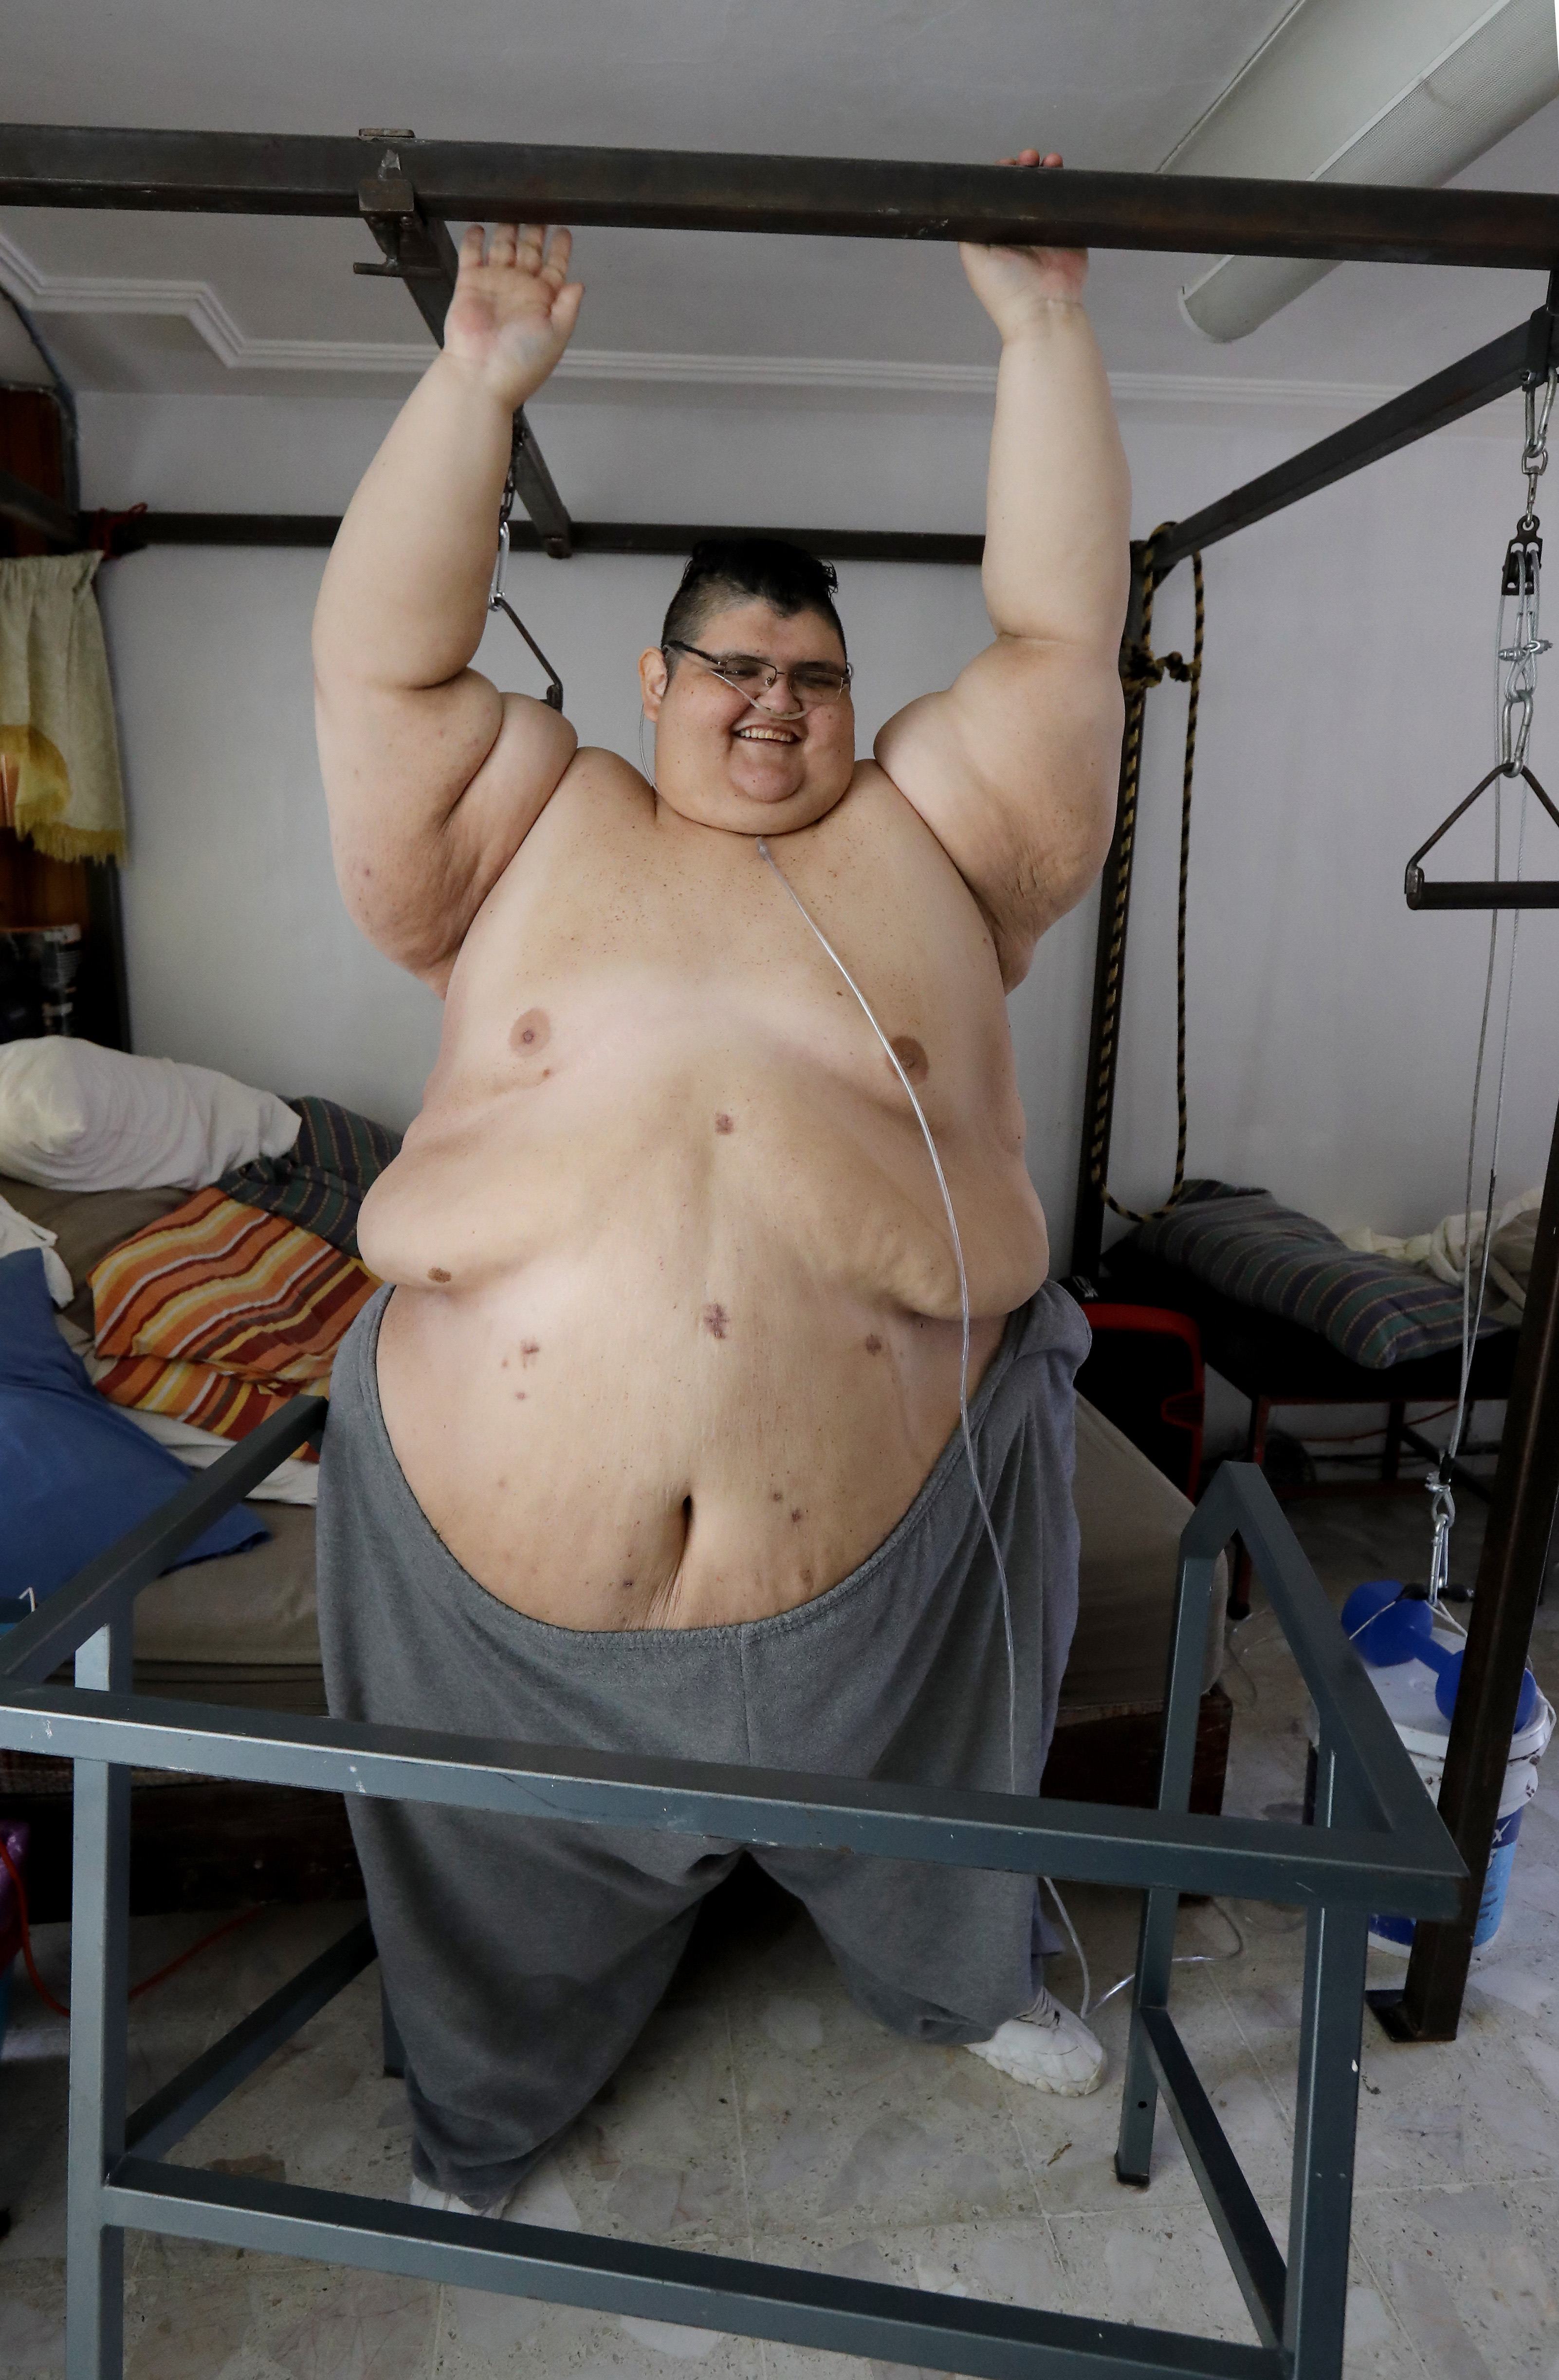 Ilyen volt - ilyen lett! 200 kilótól szabadult meg a világ legkövérebb nője